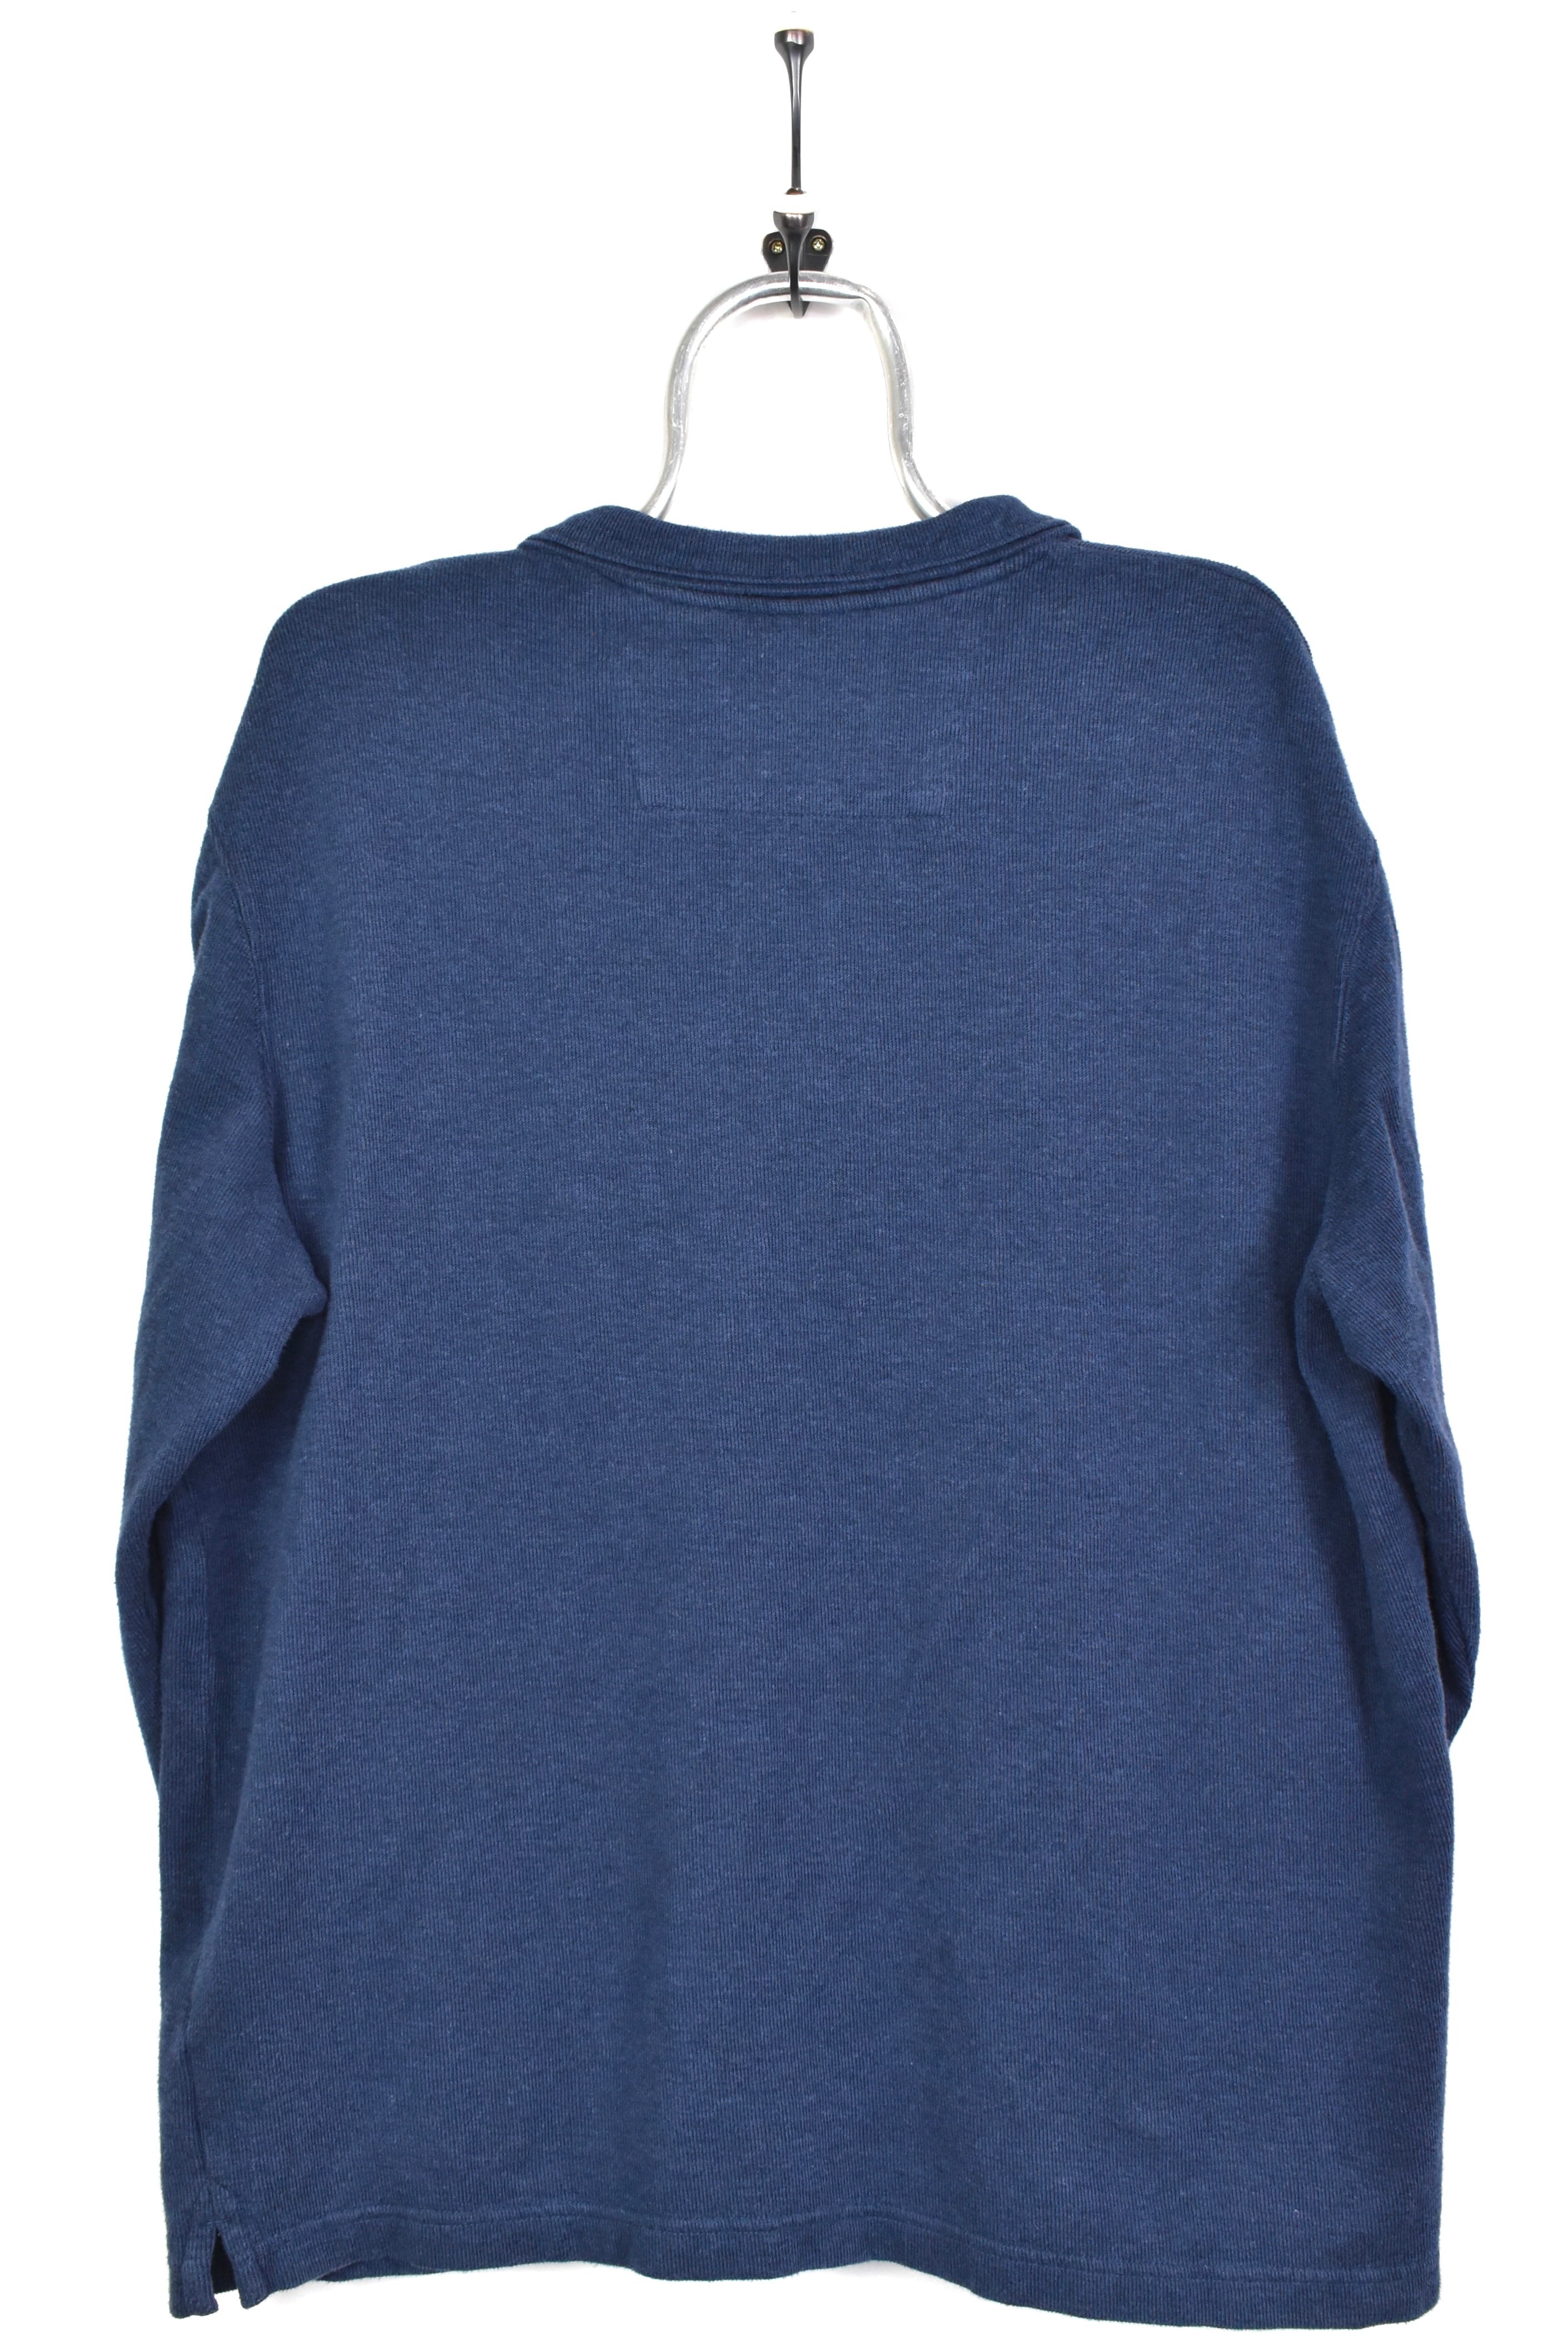 Vintage Ralph Lauren sweatshirt, Chaps embroidered 1/4 zip jumper - large, navy blue RALPH LAUREN